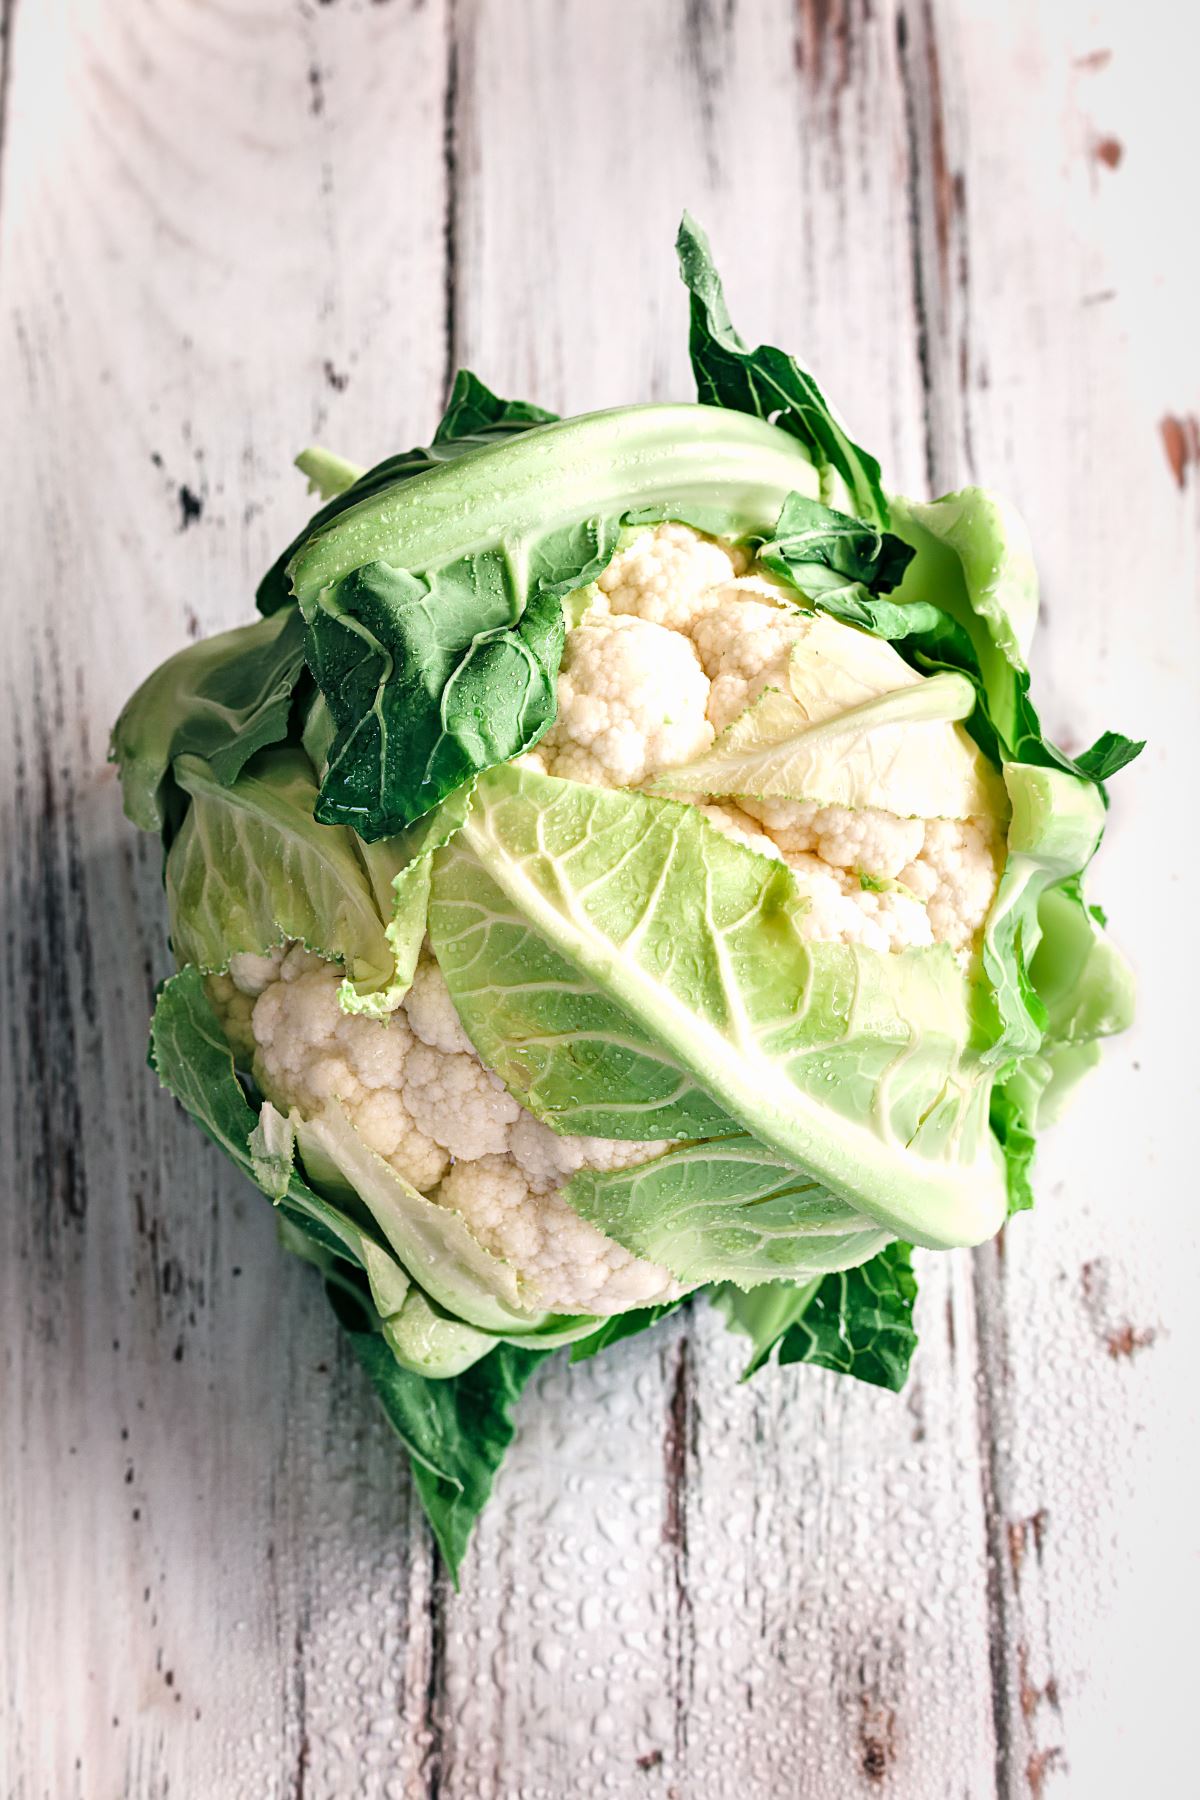 Πραγματικό superfood, το κουνουπίδι είναι ένα χορταστικό λαχανικό. Το ελαιόλαδο αναδεικνύει τη γεύση του και σας προσφέρει καλά λιπαρά αλλά και σας χορταίνει περισσότερο.